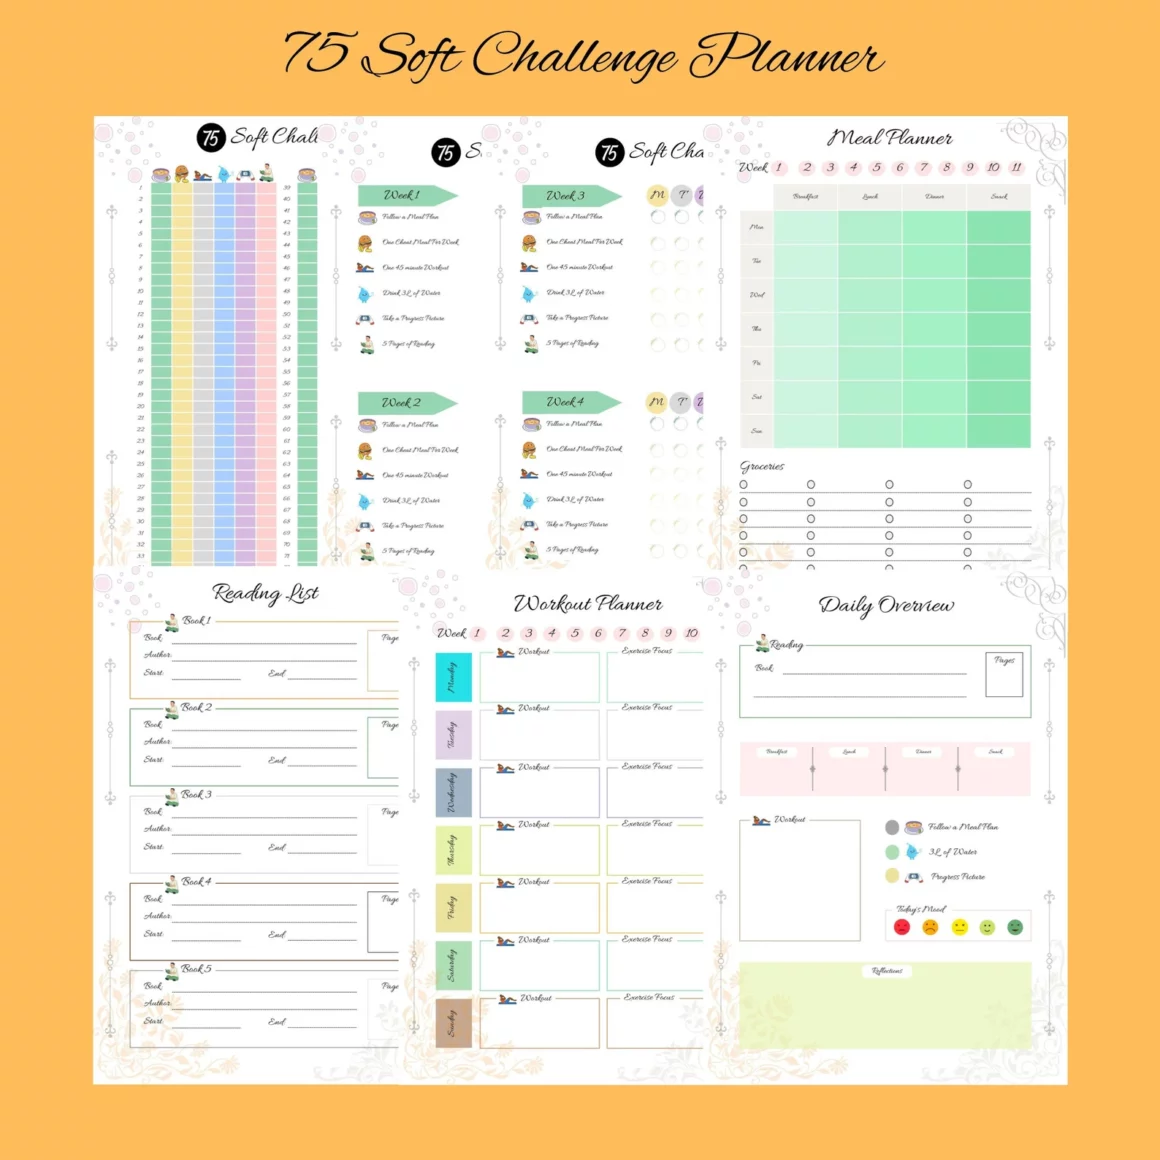 75 Soft Challenge Tracker